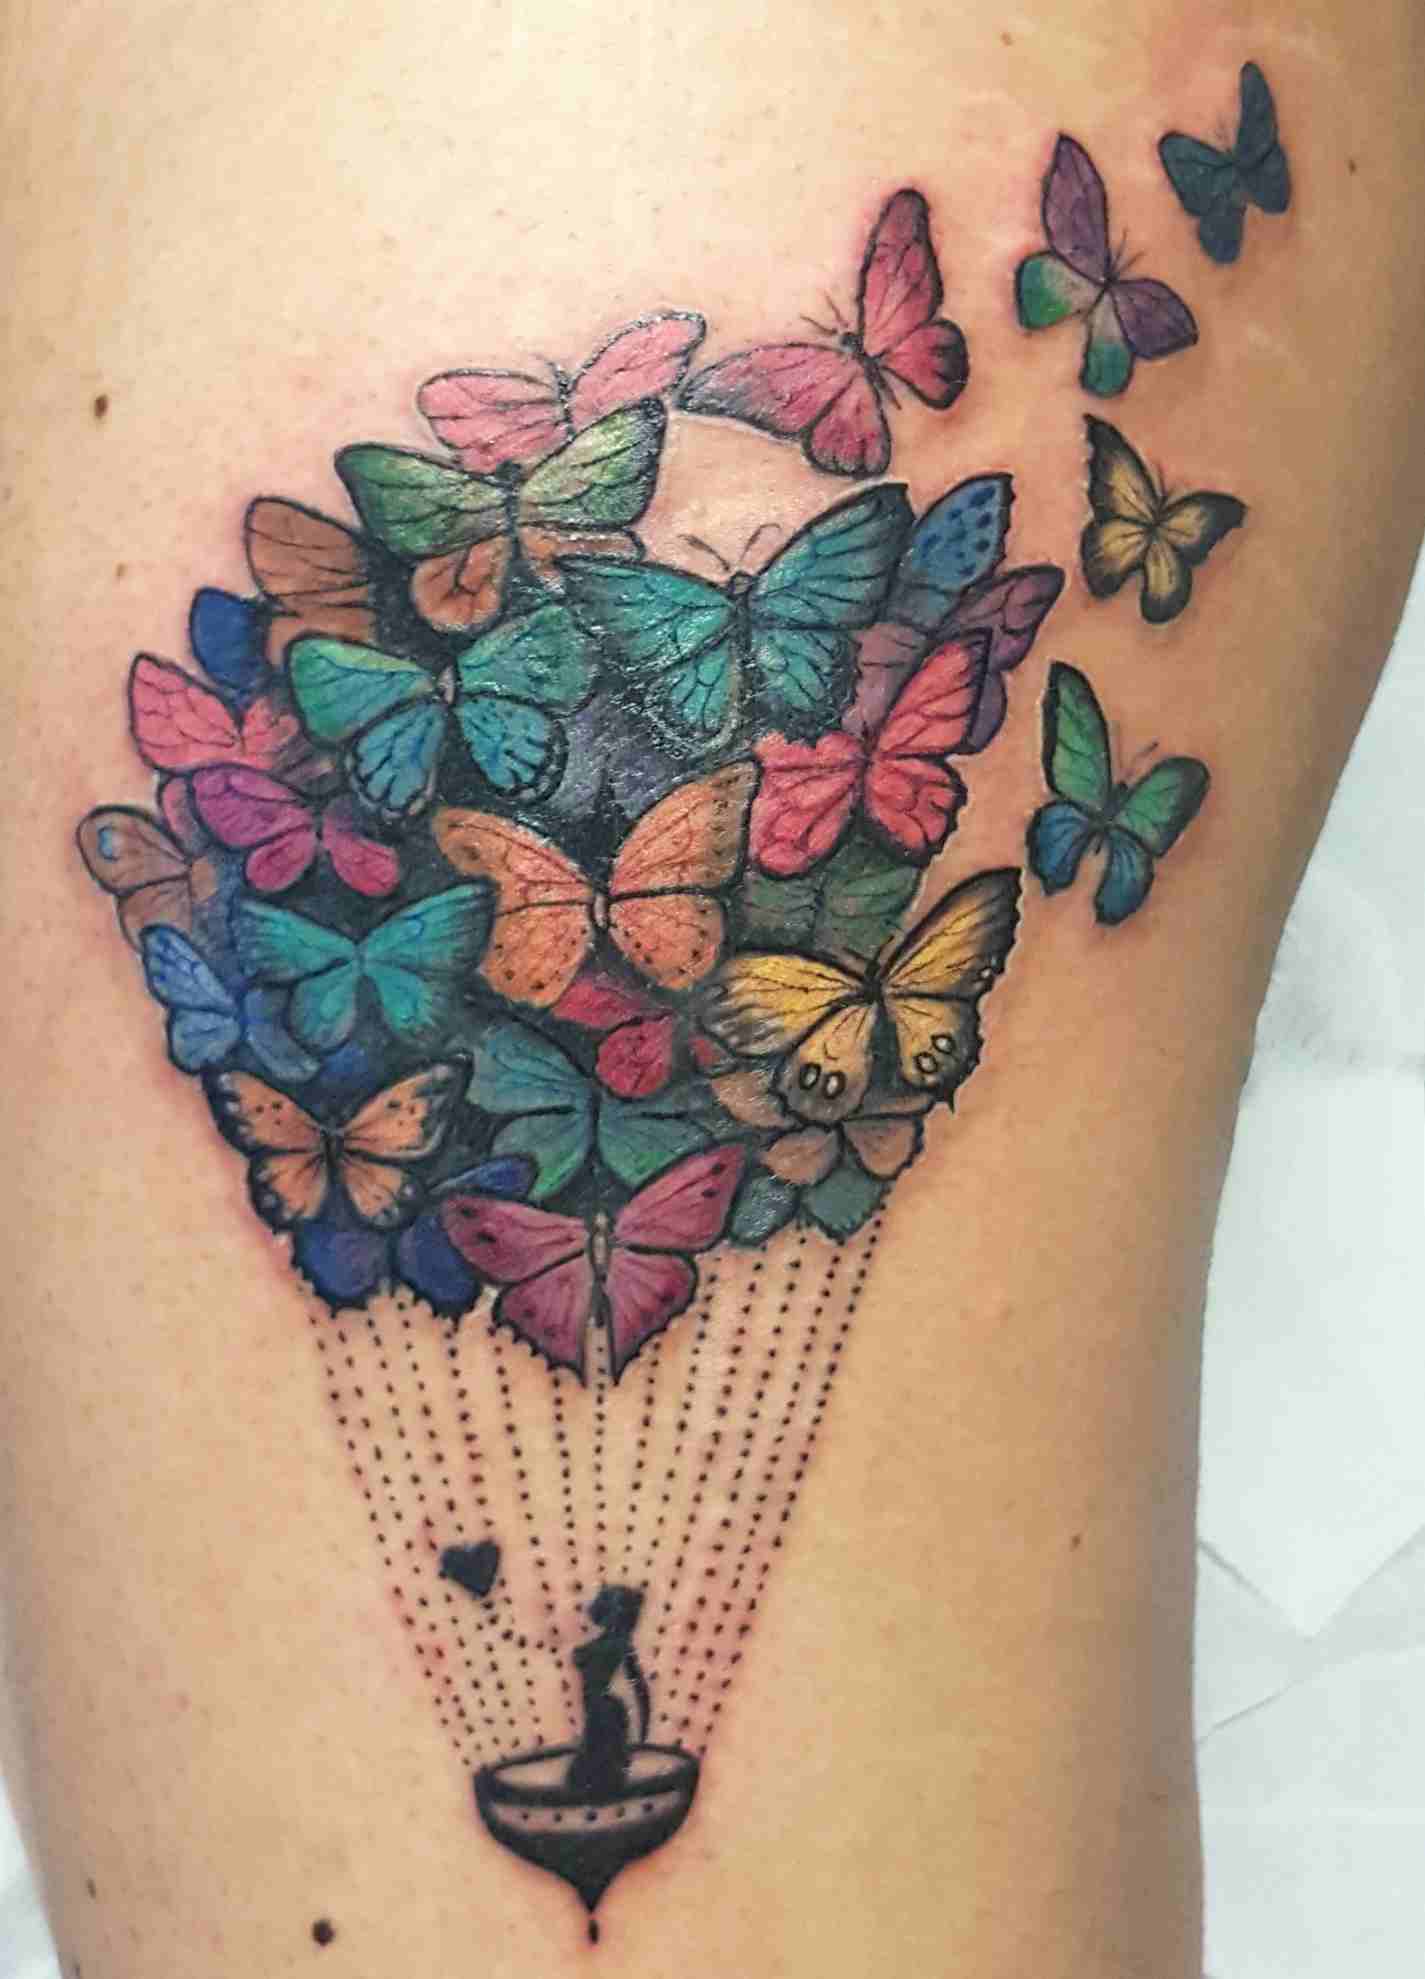 Luftbalon Tattoodesign Oberschenkel Tattoos mit Bedeutung Frauen